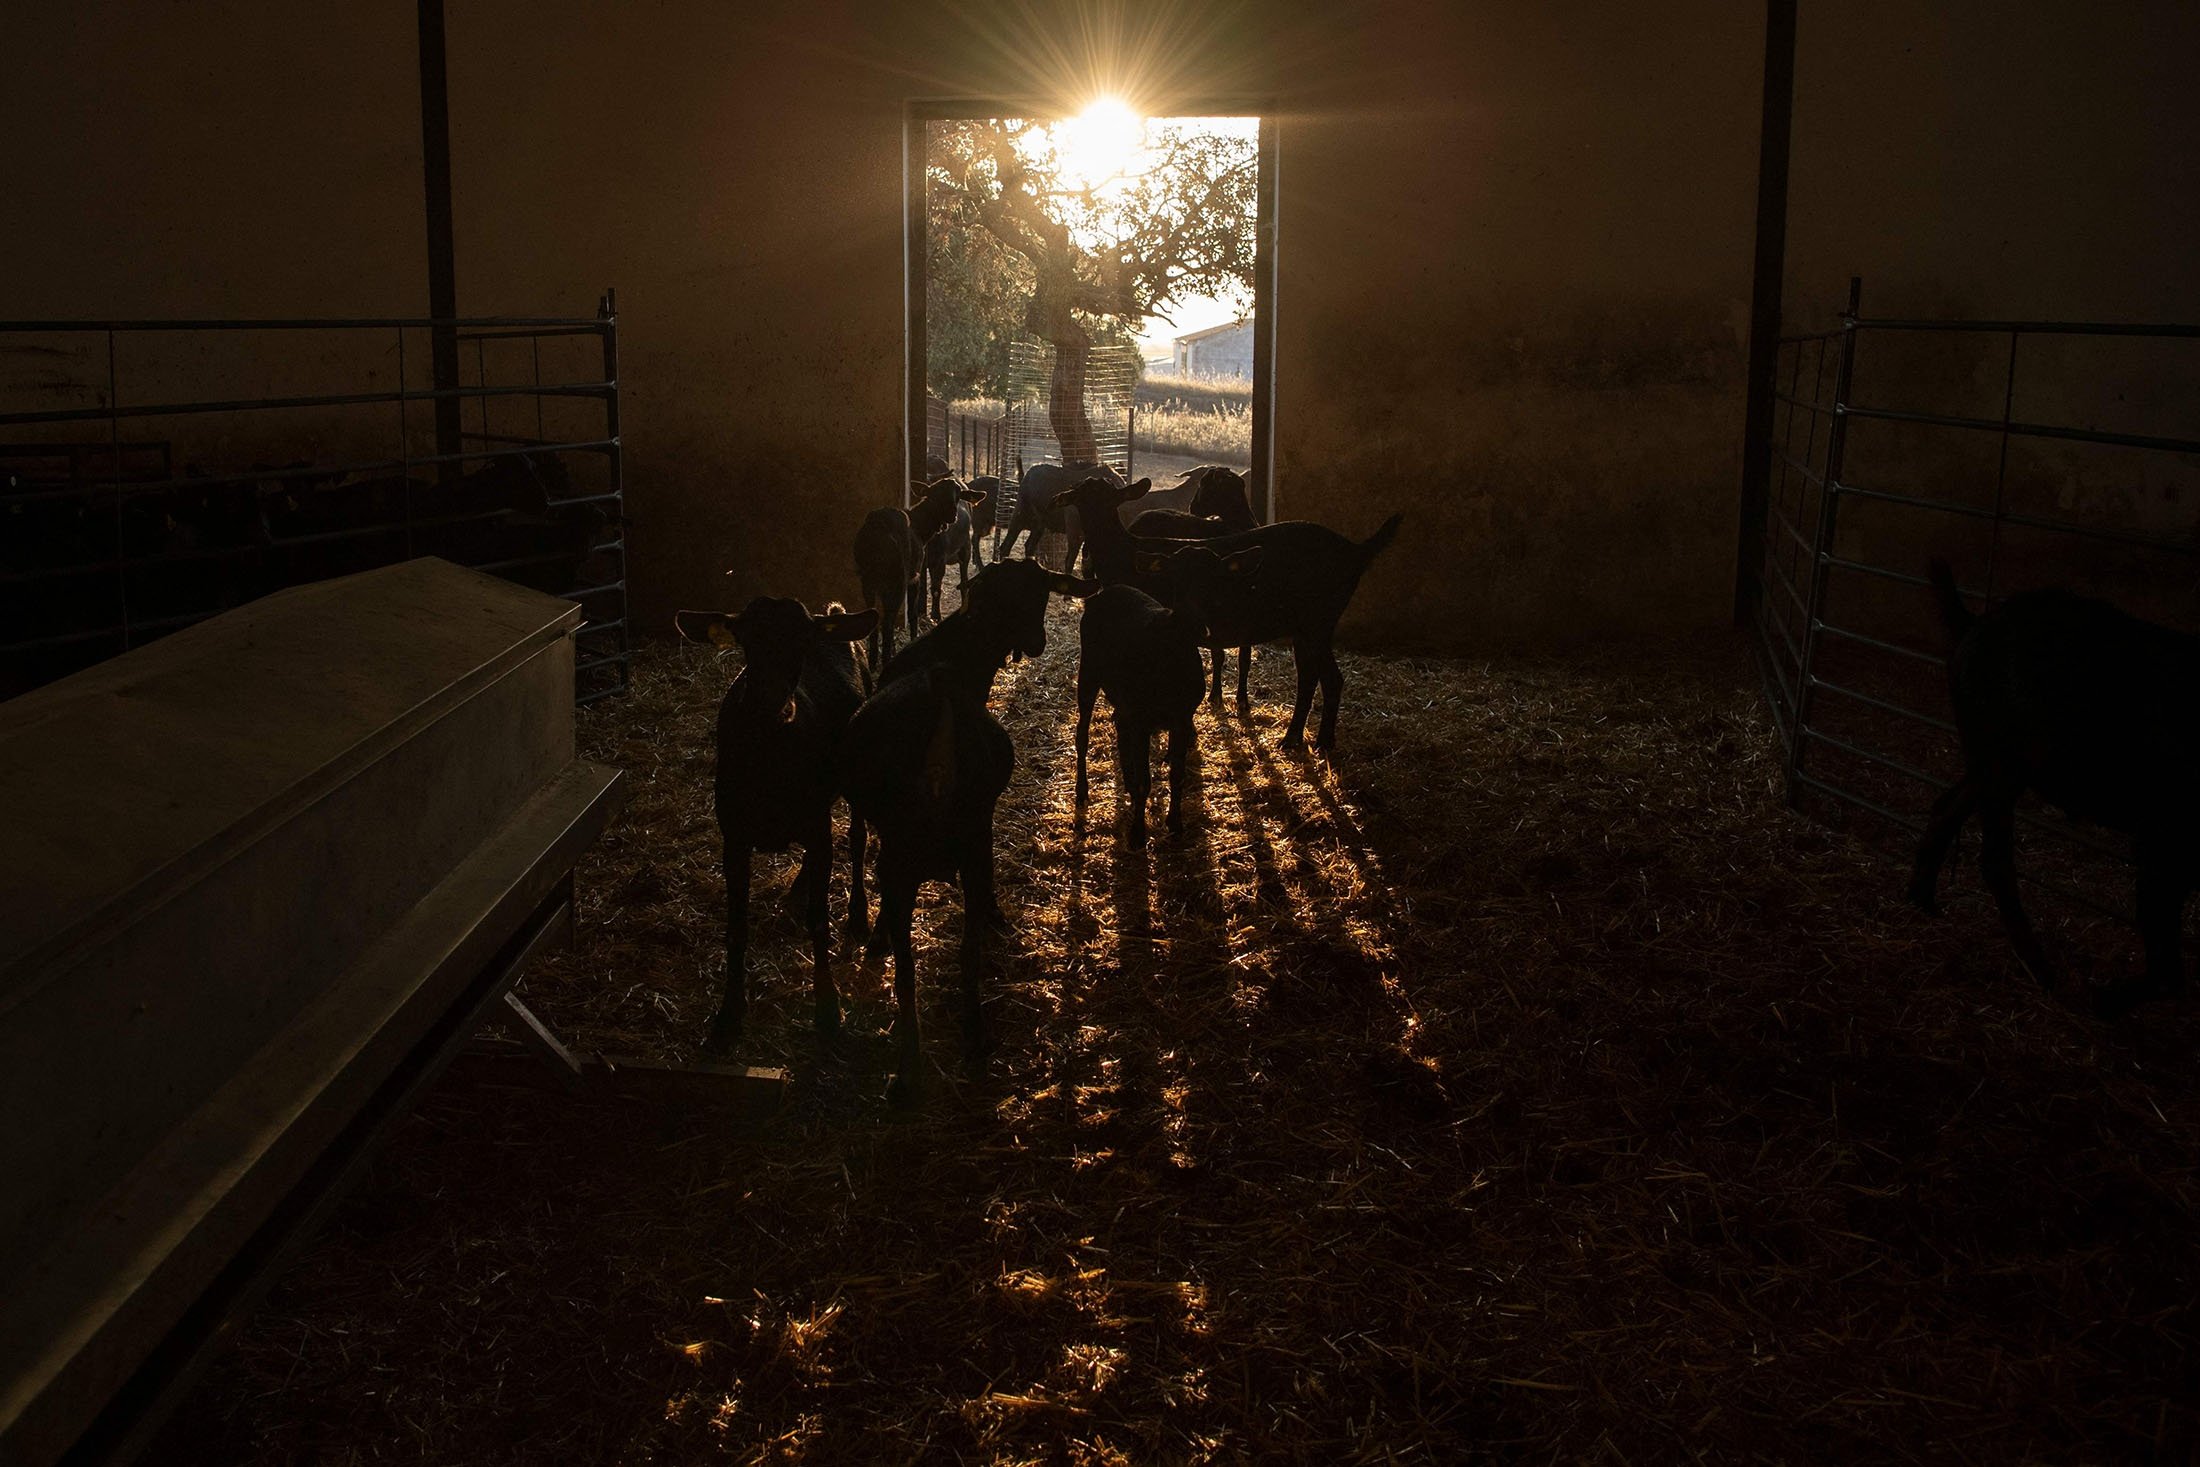 Goats are seen at the Cooprado farm's shepherding school in Casar de Caceres, Spain, May 13, 2022. (AFP Photo)